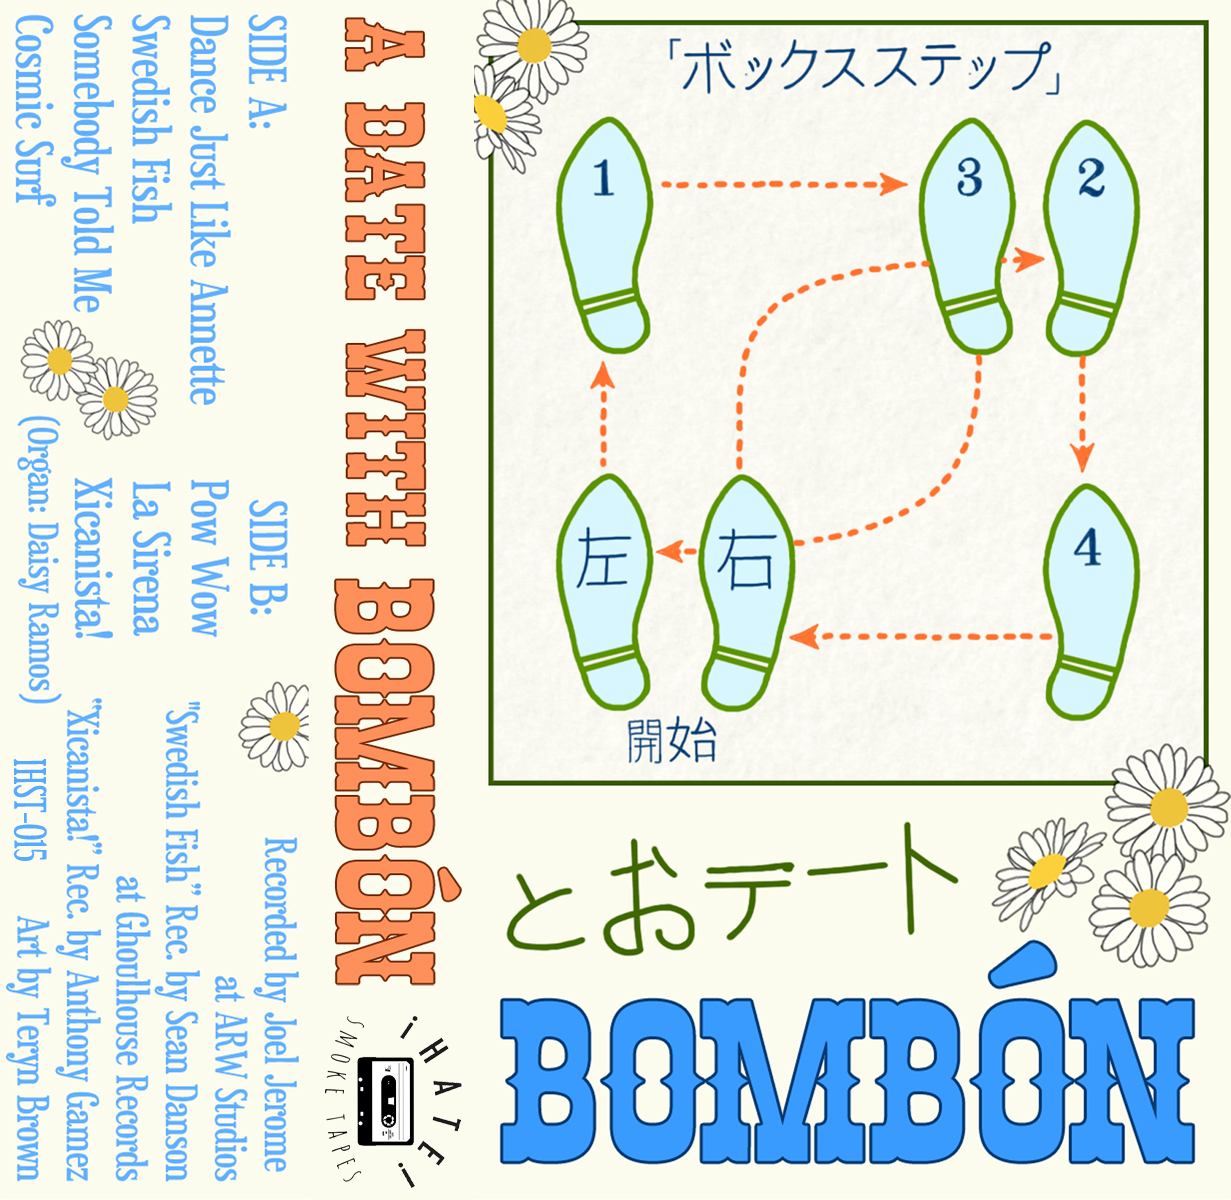 bombon final tape cover SIZED.jpg